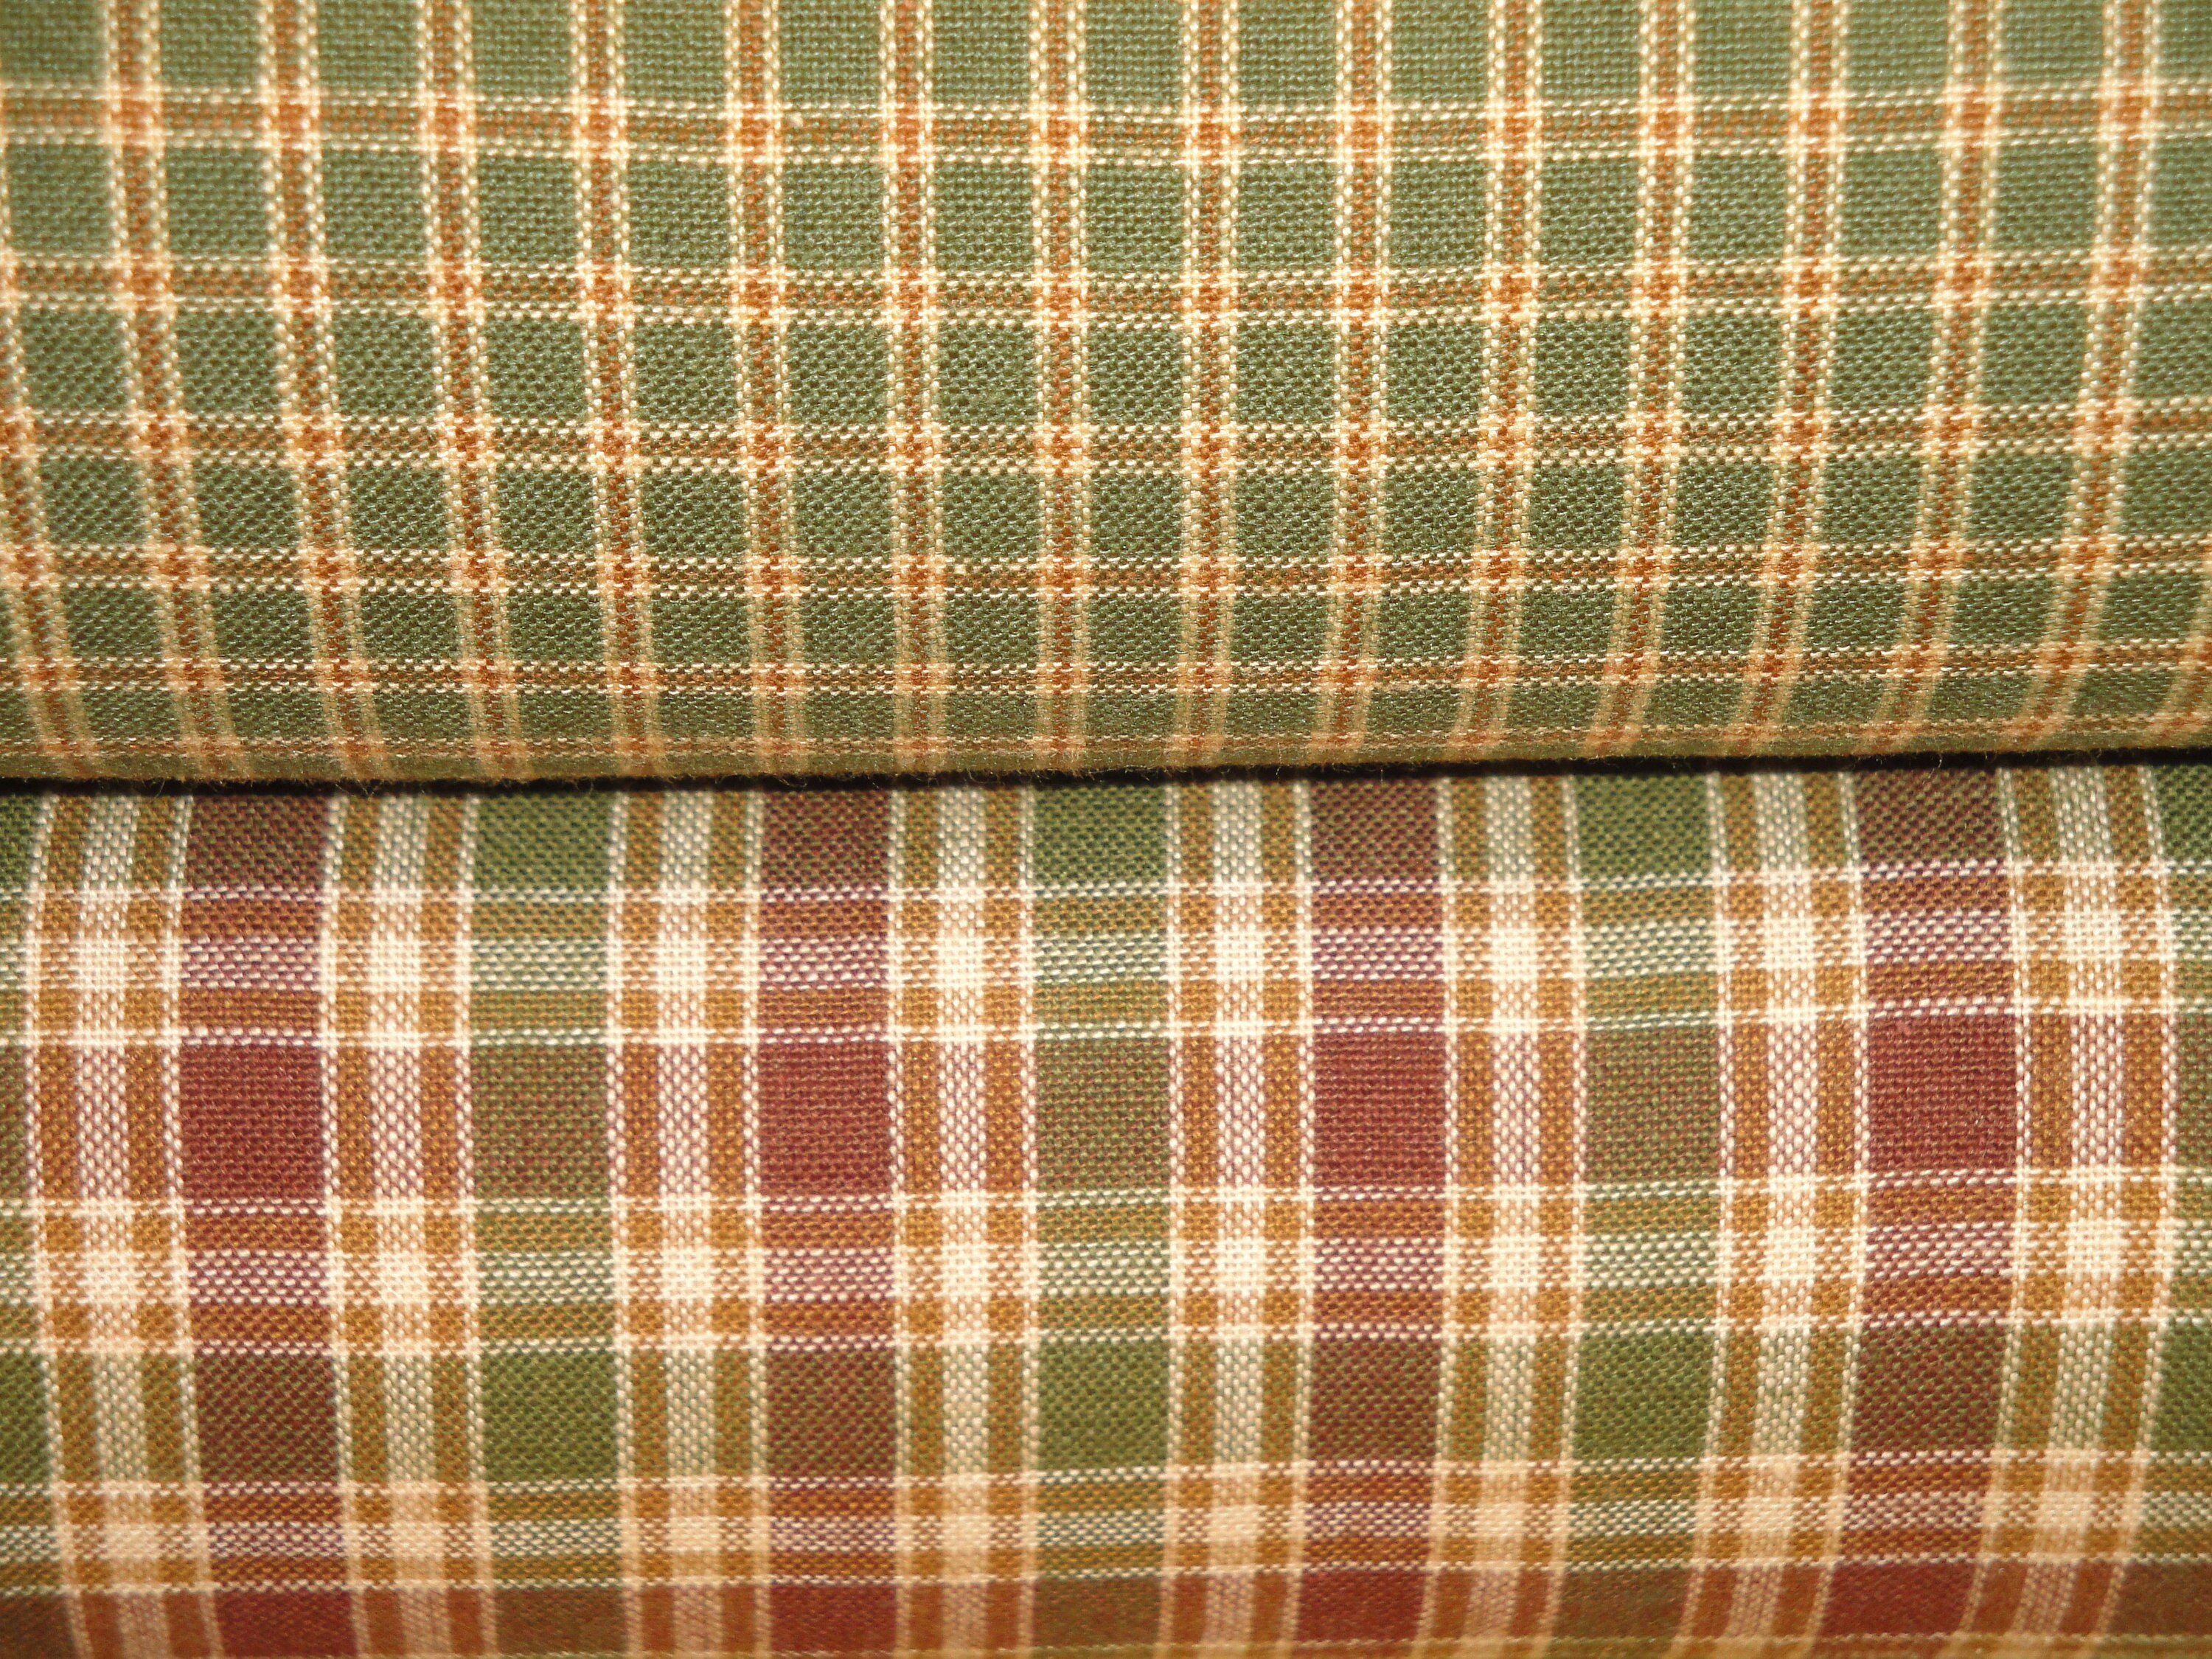 Woven Fabric Blanket Material~~Rustic Plaid Fabric~~Plaid Woven Curtain Panel~~Vintage Plaid Fabric~~Repurposed Plaid Blanket~~~Item #407